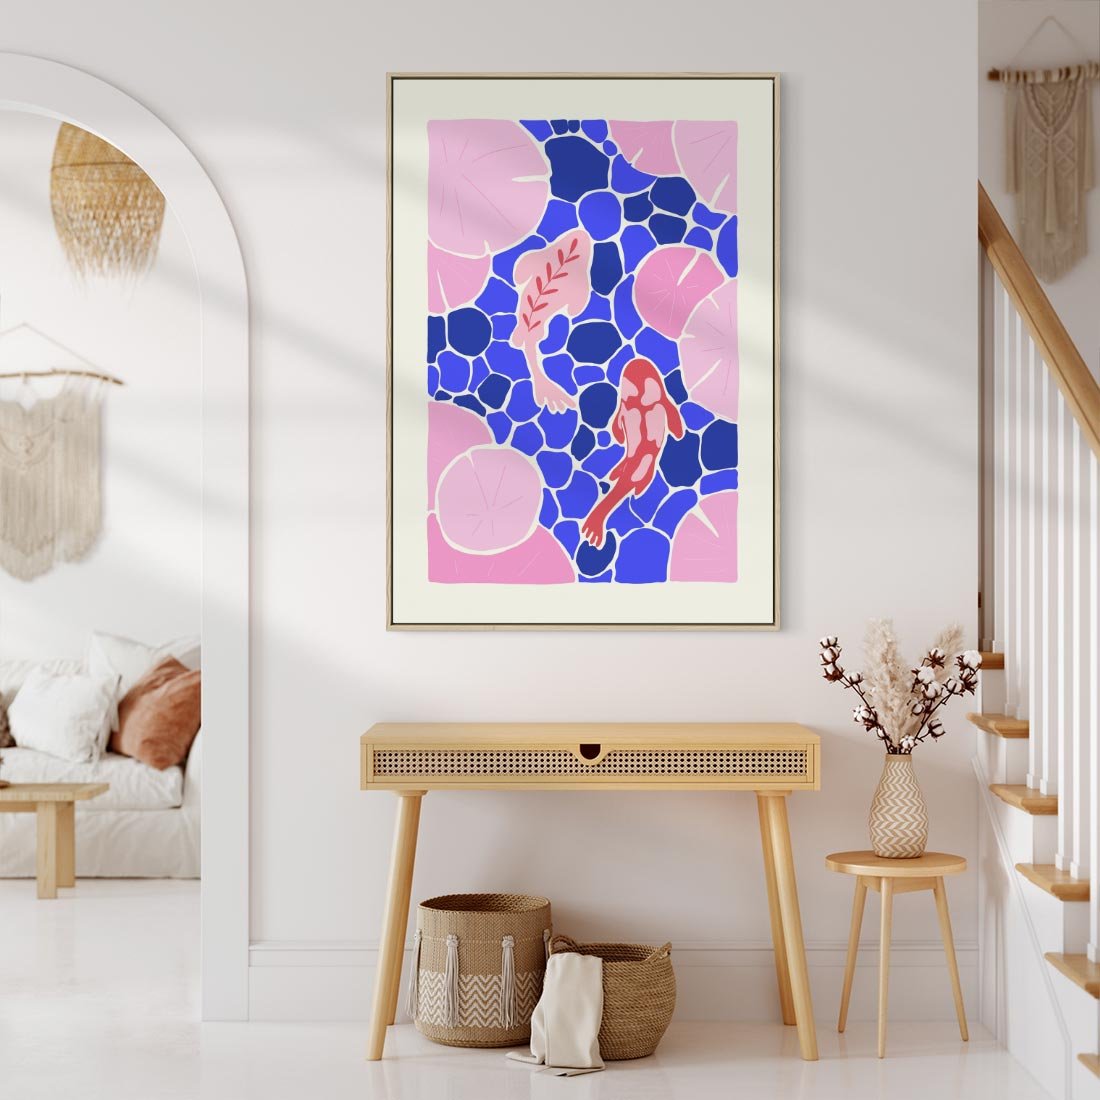 Obraz w ramie 50x70 - Rzeka Abstrakcji - abstrakcyjna kompozycja, różowe ryby wśród rafy - rama drewno